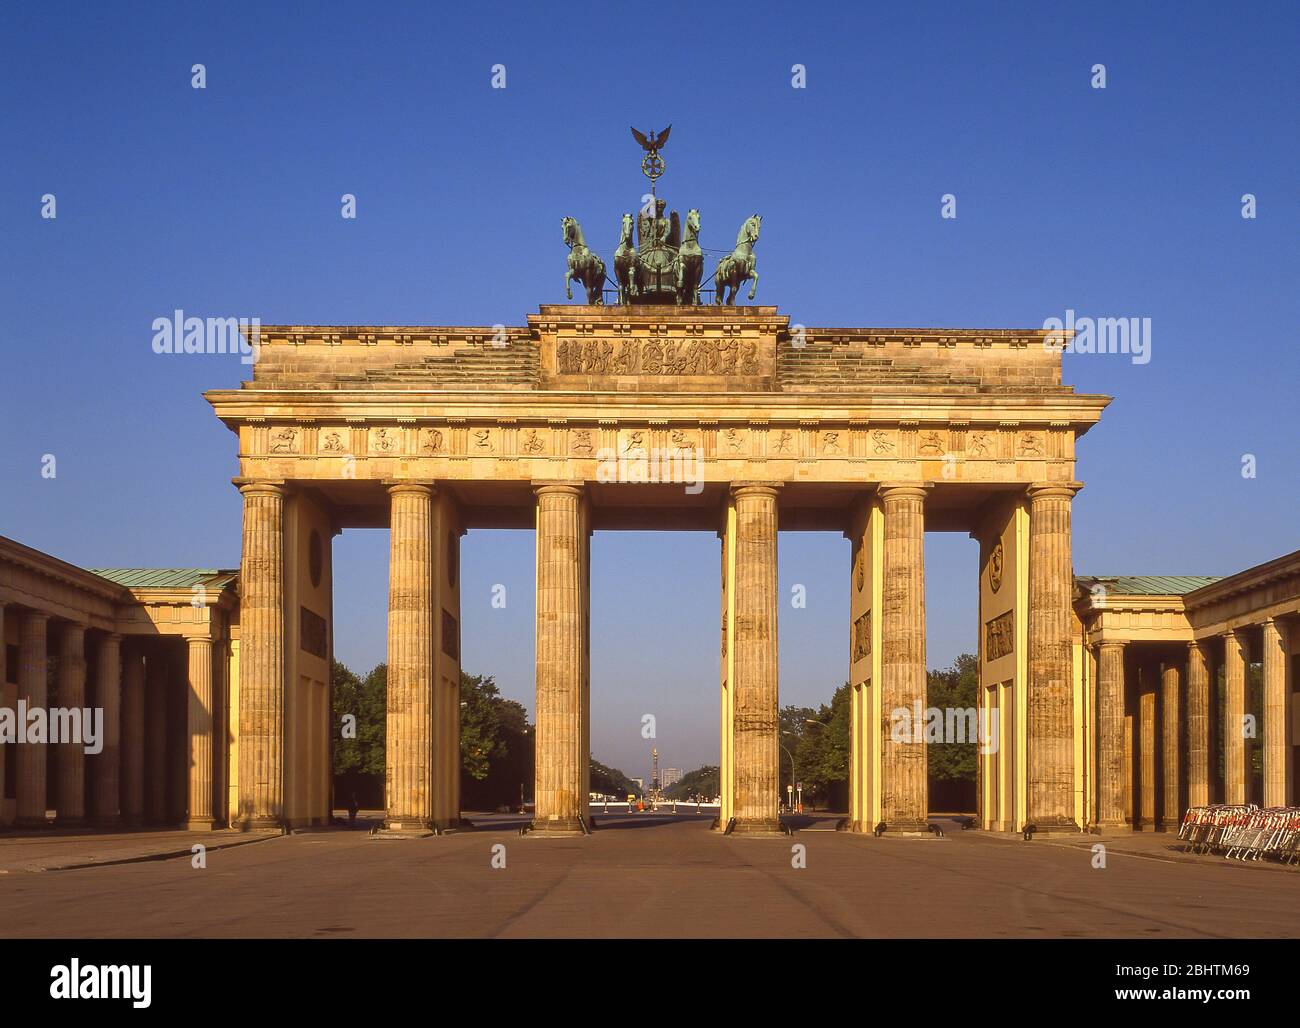 Porte de Brandebourg (Brandenburger Tor) de Pariser Platz, Mitte, Berlin, République fédérale d'Allemagne Banque D'Images